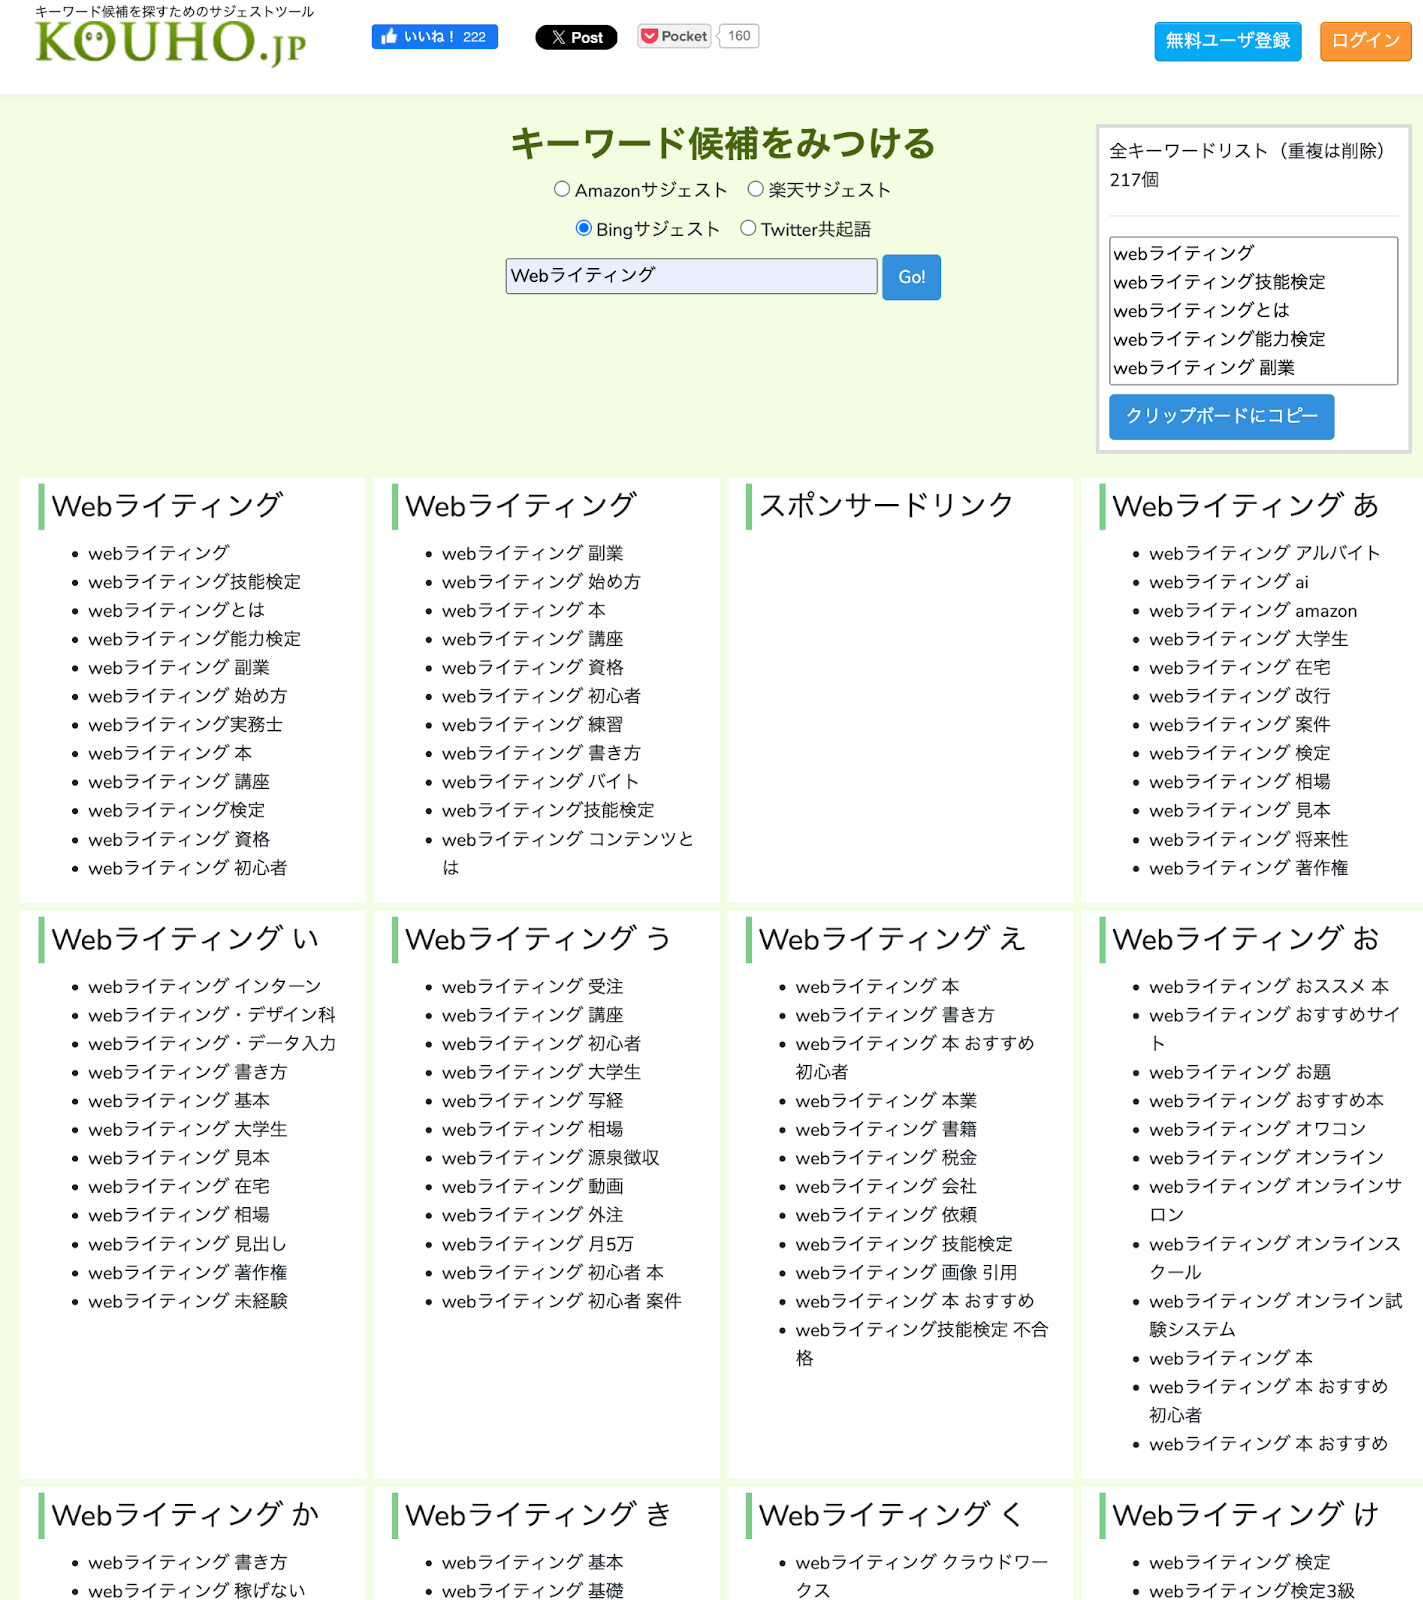 KOUHO.jpで「Webライティング」と入力した使用画面